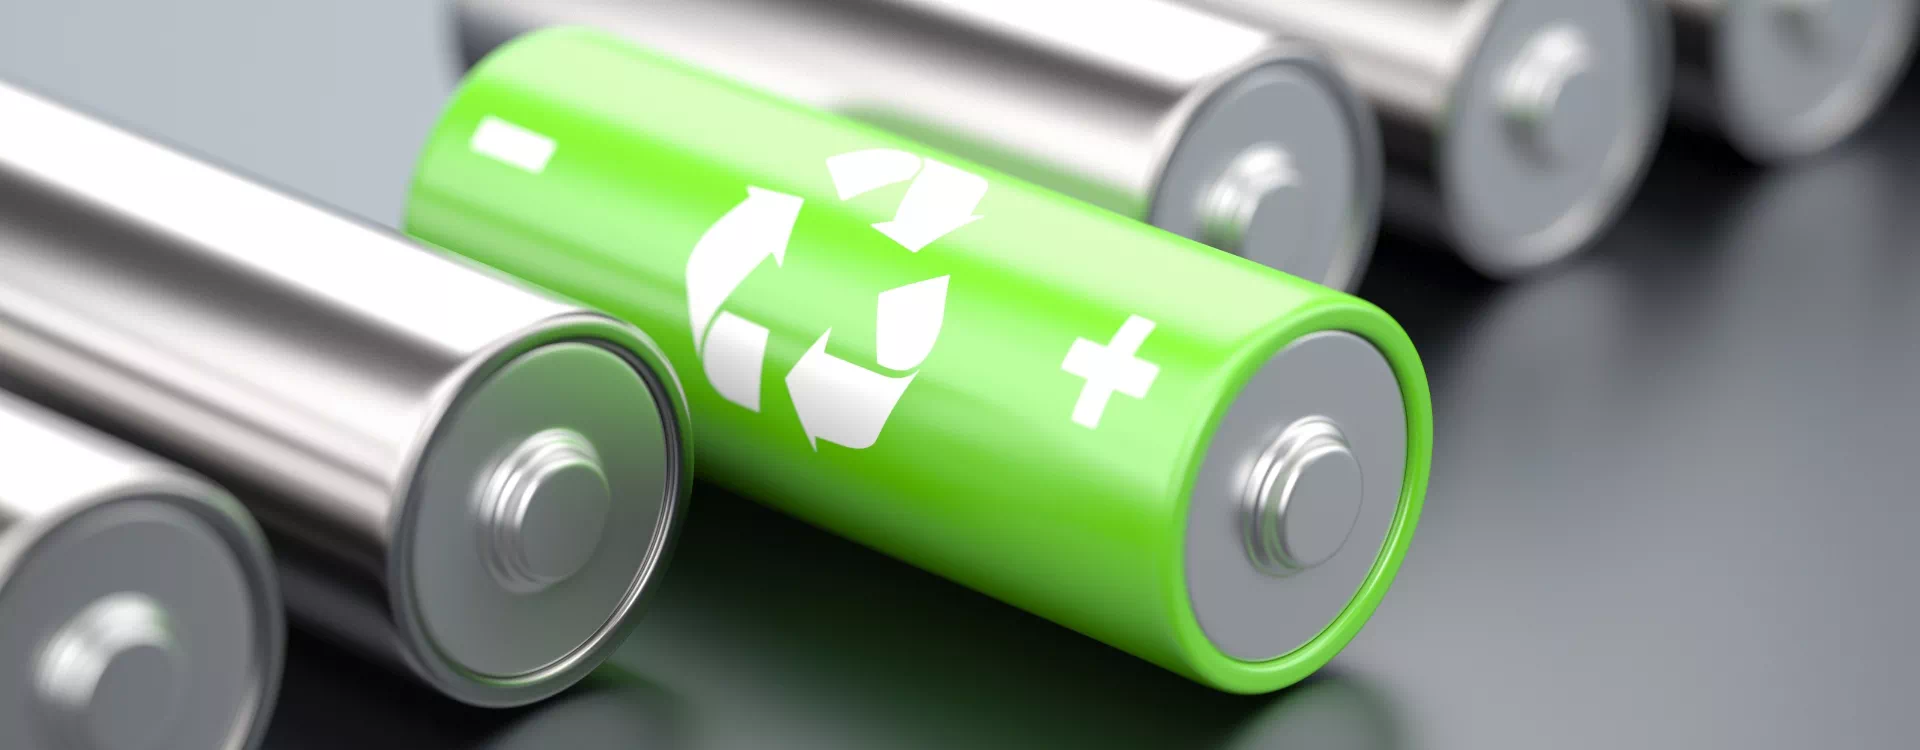 zielona bateria